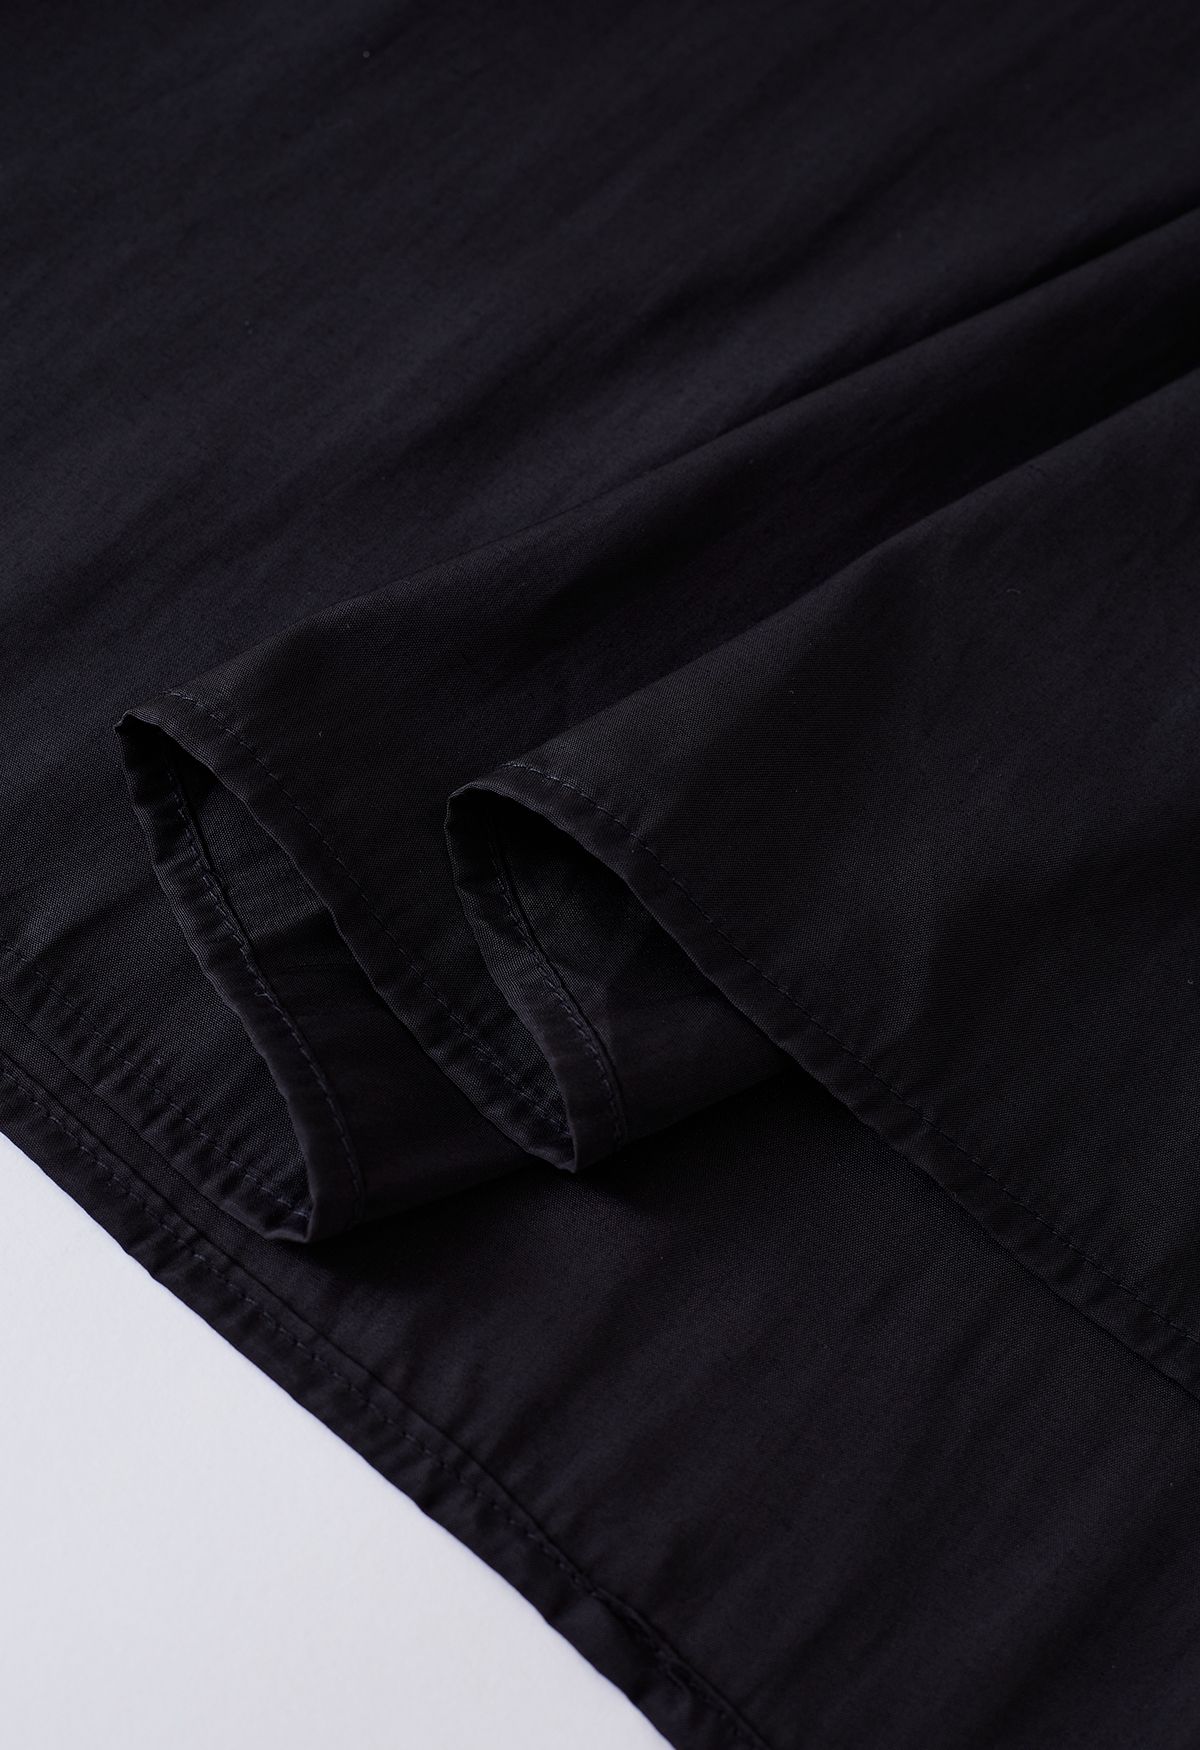 Cutout Neckline Knit Spliced Dress in Black